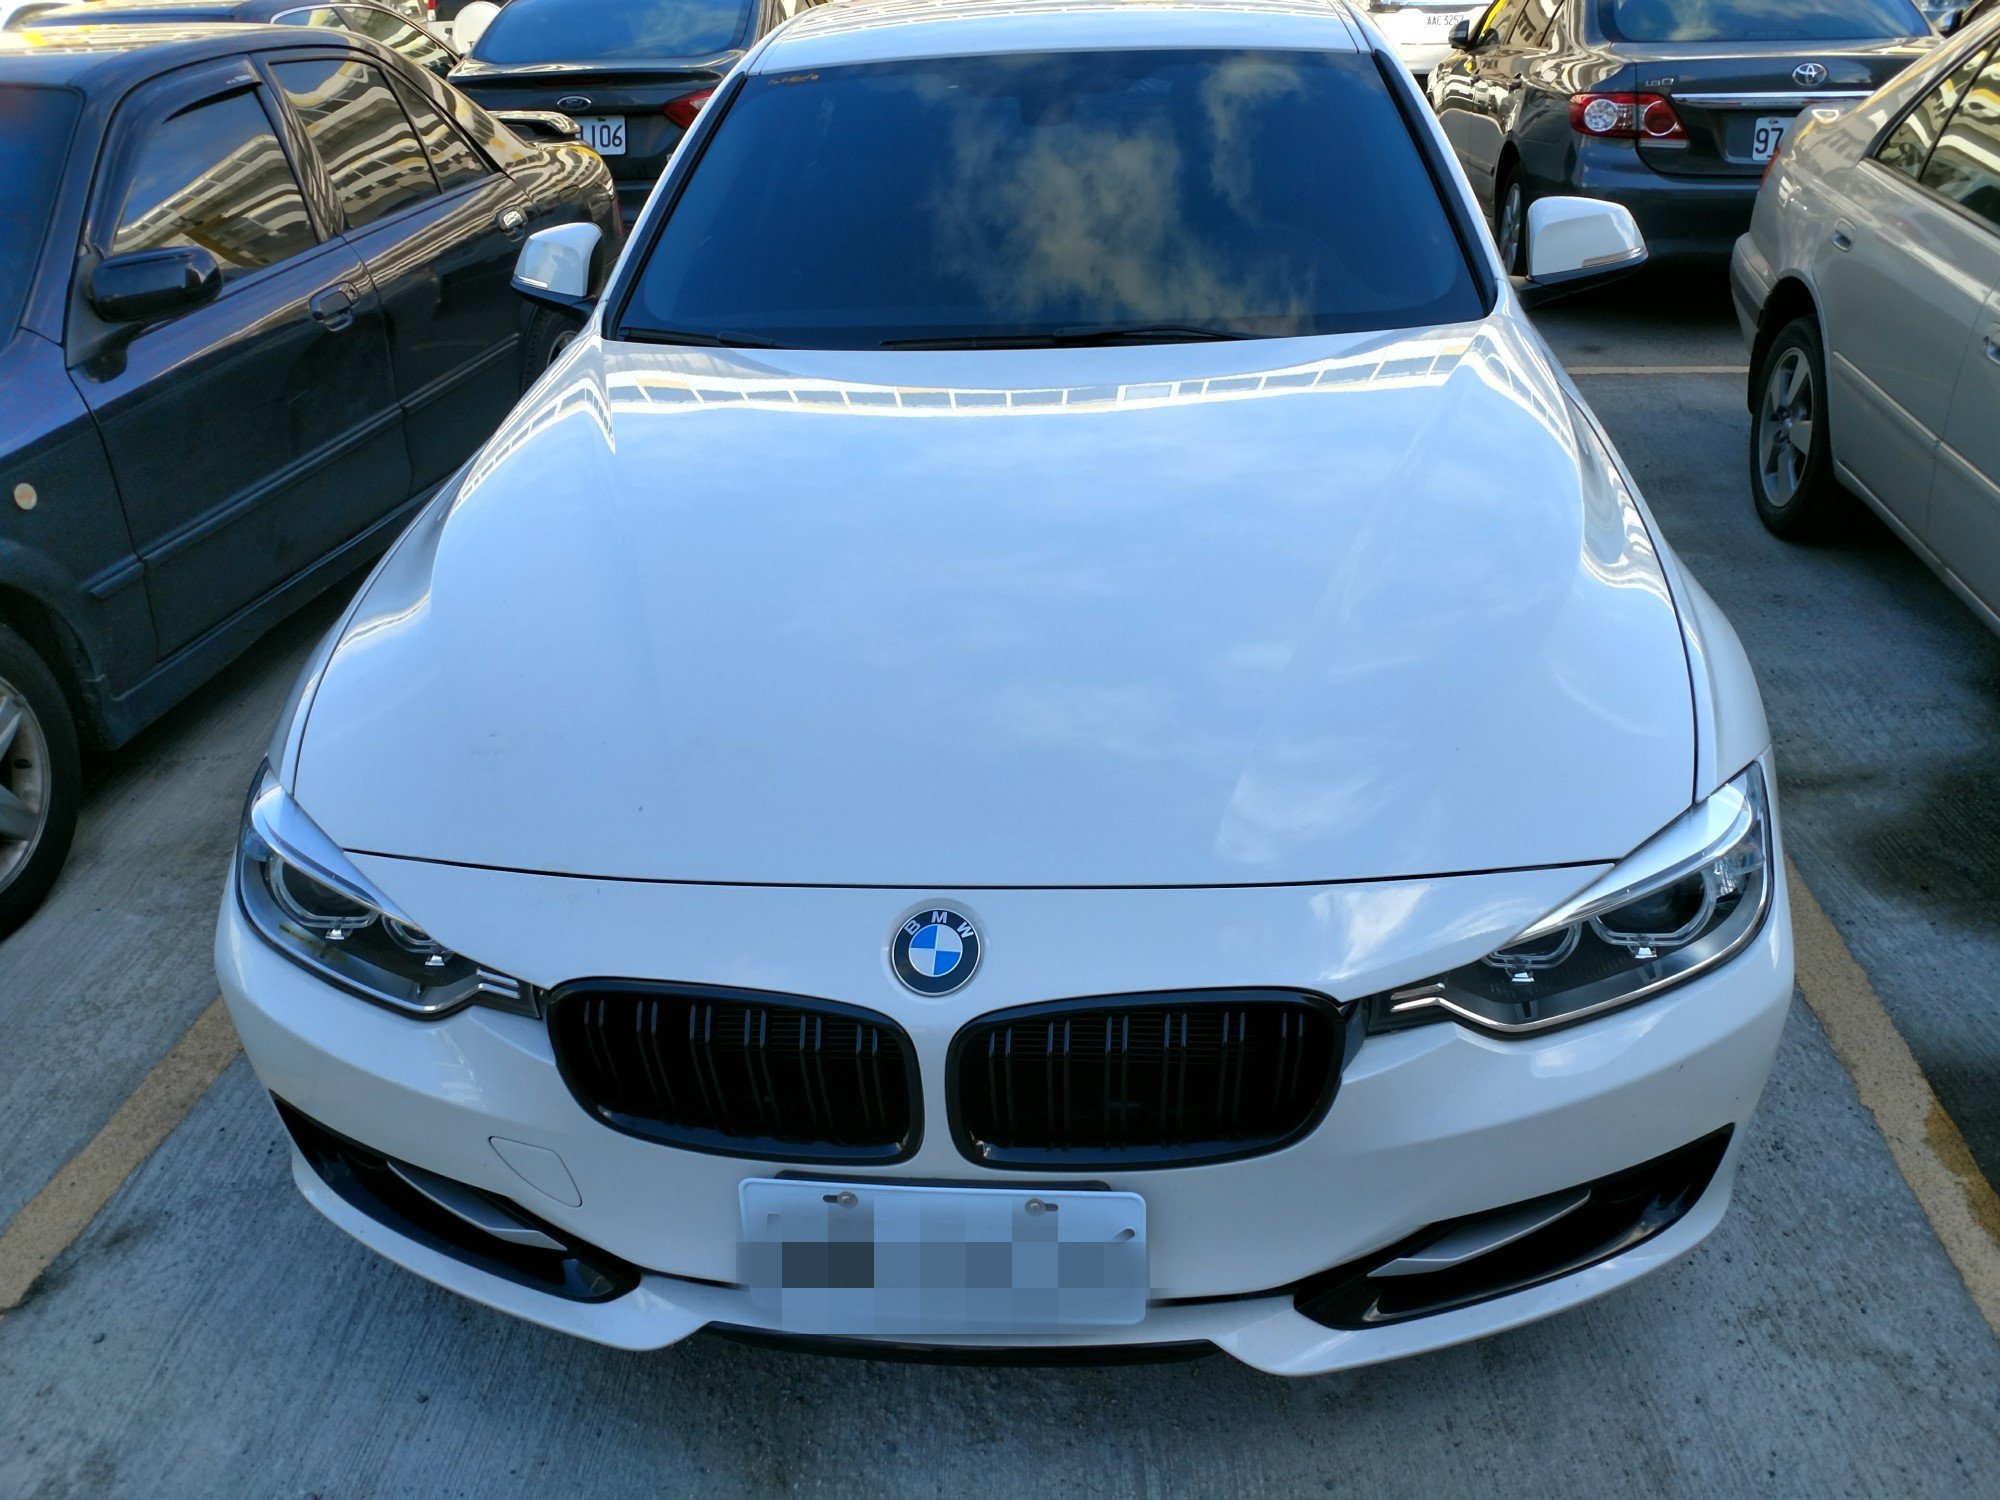 2013 BMW 寶馬 3-series sedan